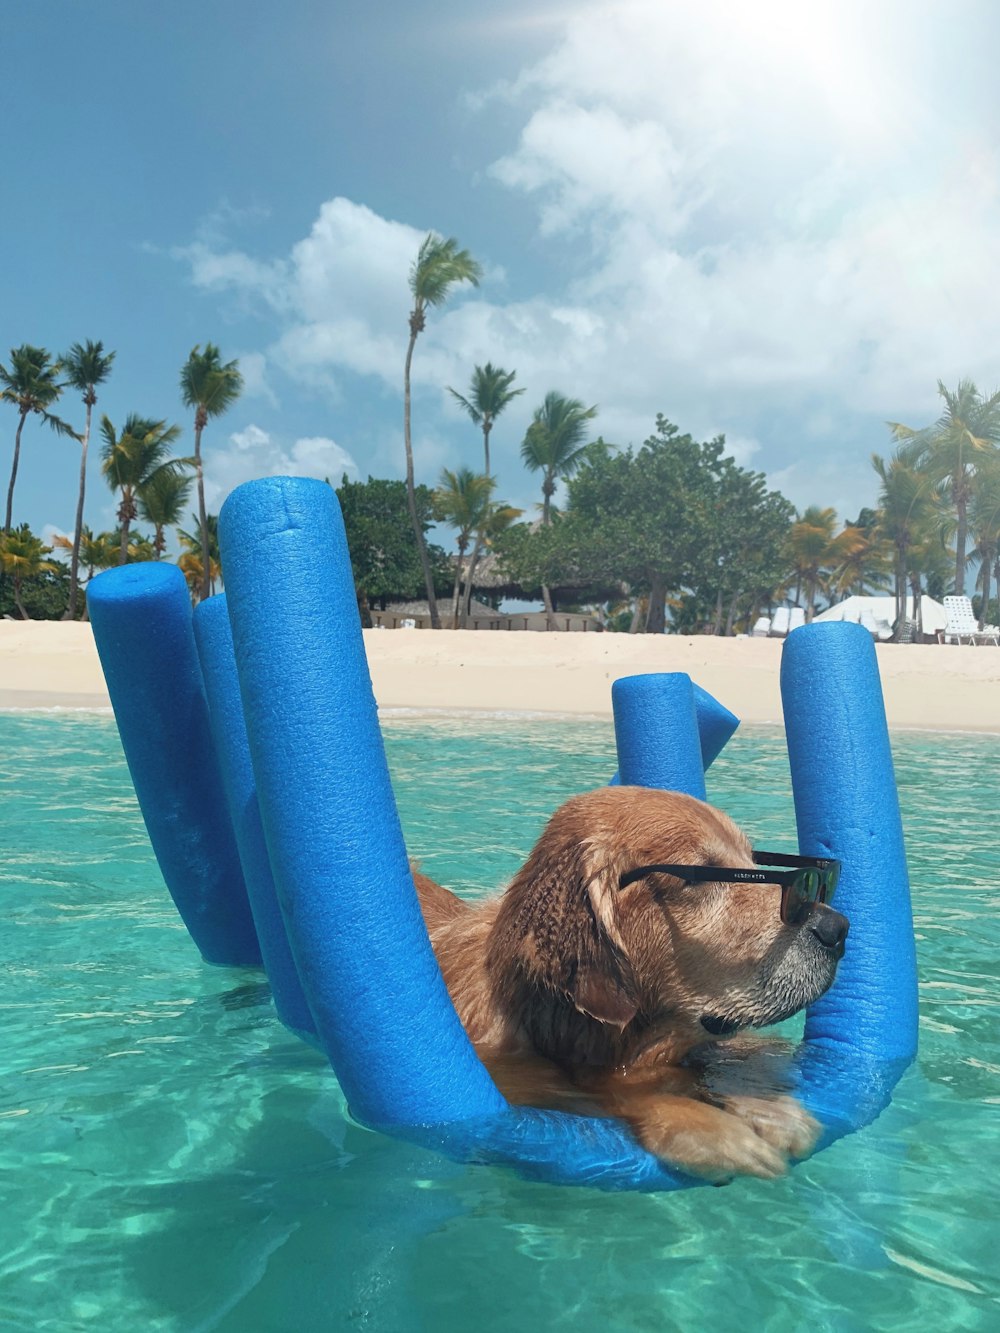 cane a pelo corto marrone in piscina gonfiabile blu durante il giorno